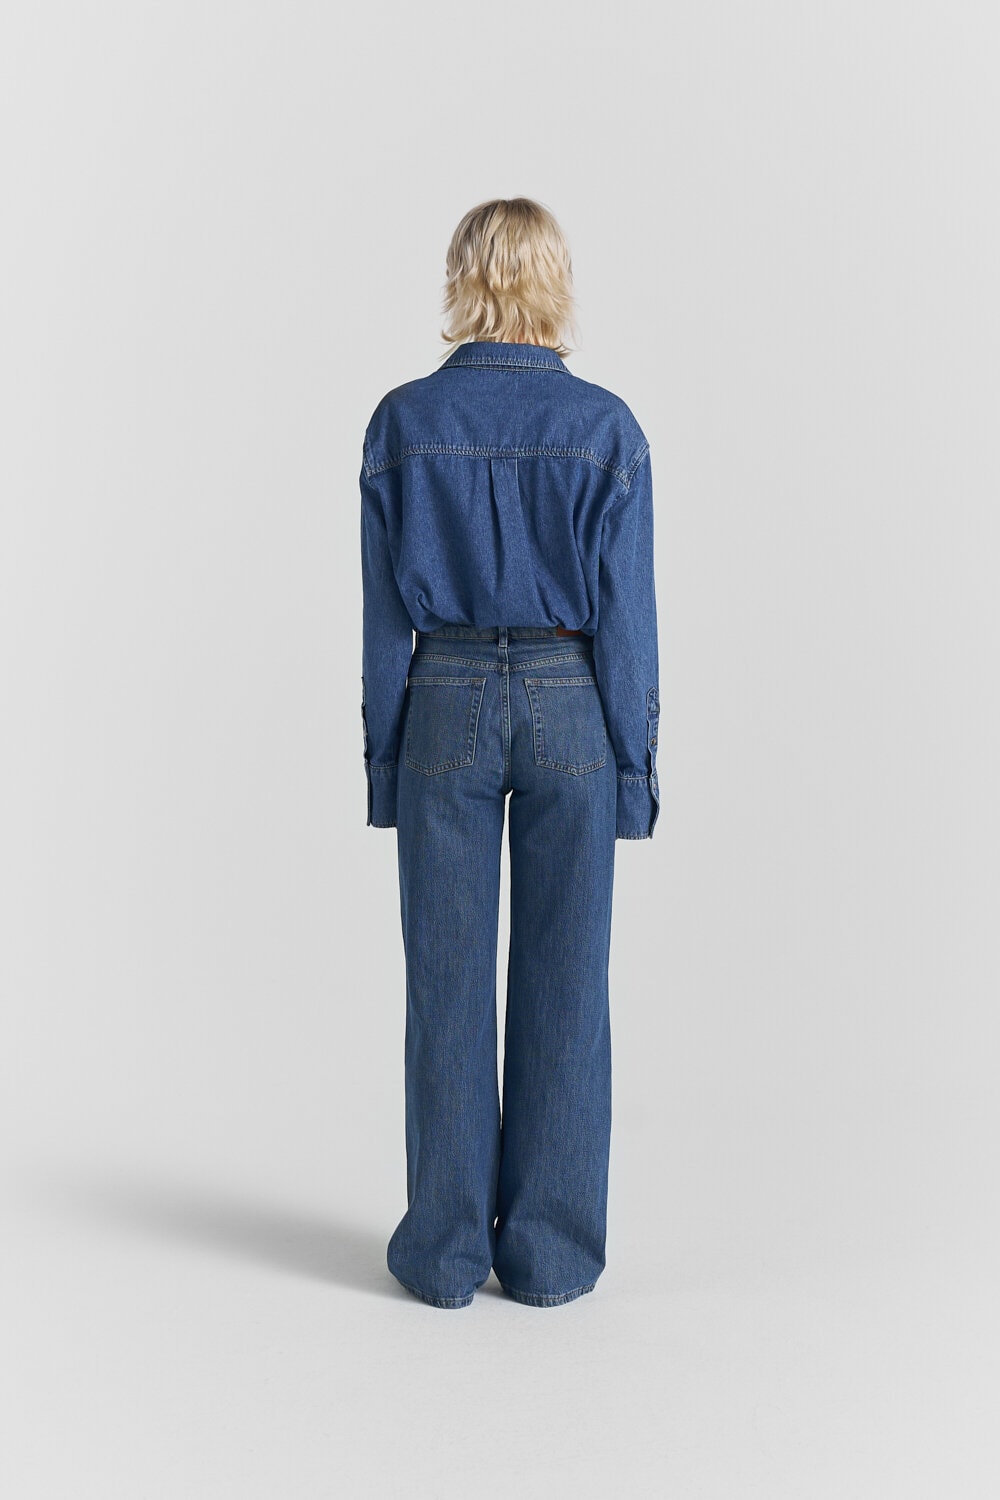 Tori Rigid Jeans